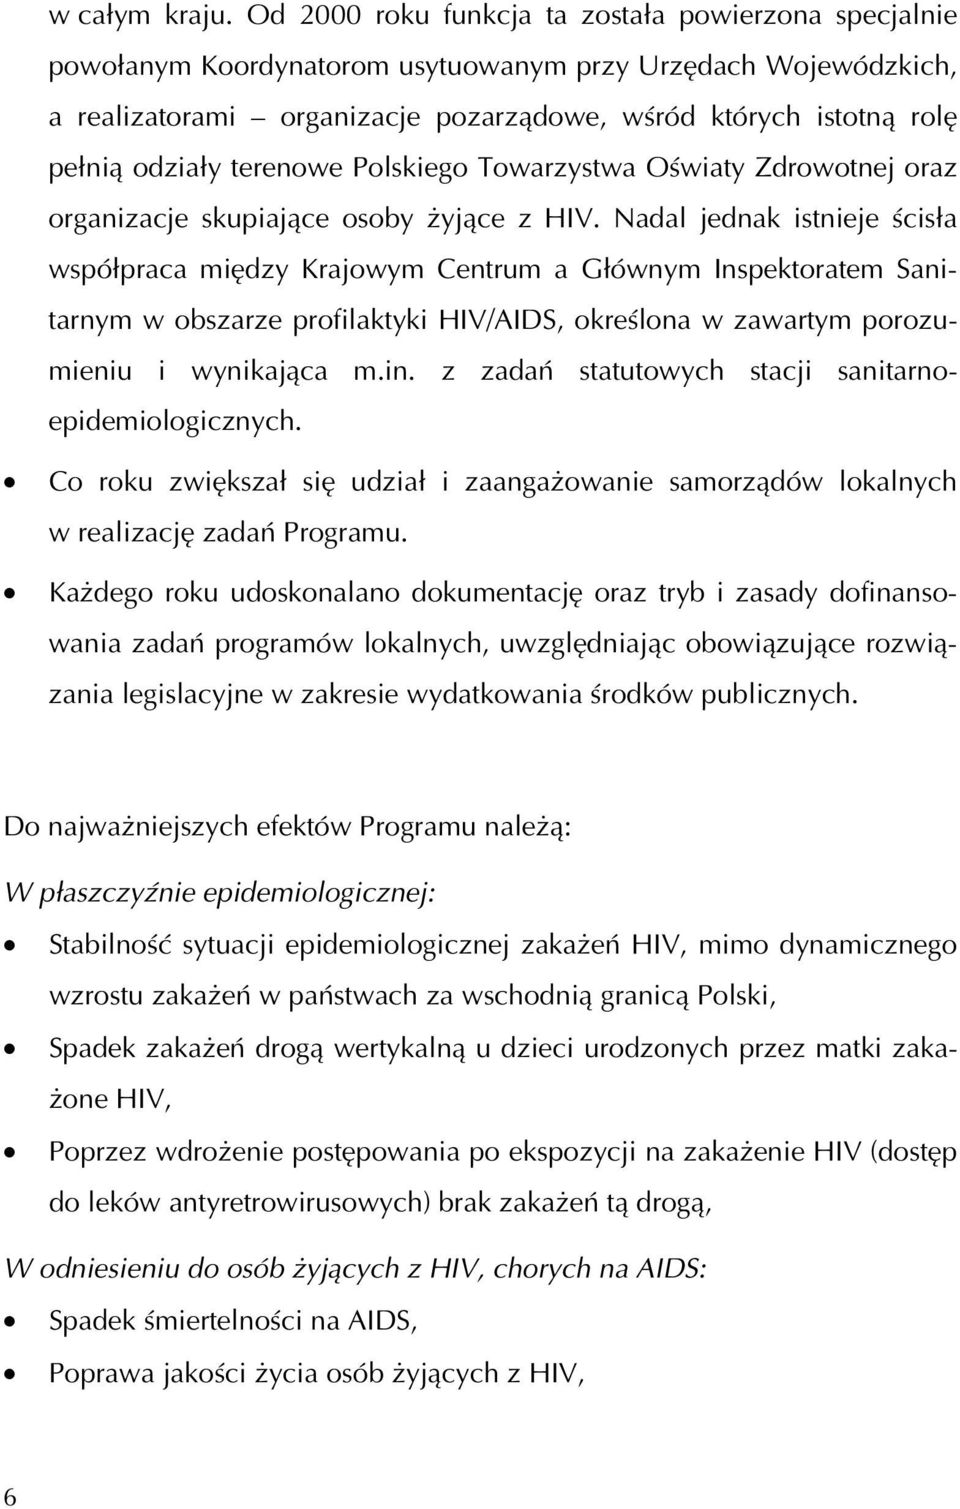 odziały terenowe Polskiego Towarzystwa Oświaty Zdrowotnej oraz organizacje skupiające osoby żyjące z HIV.